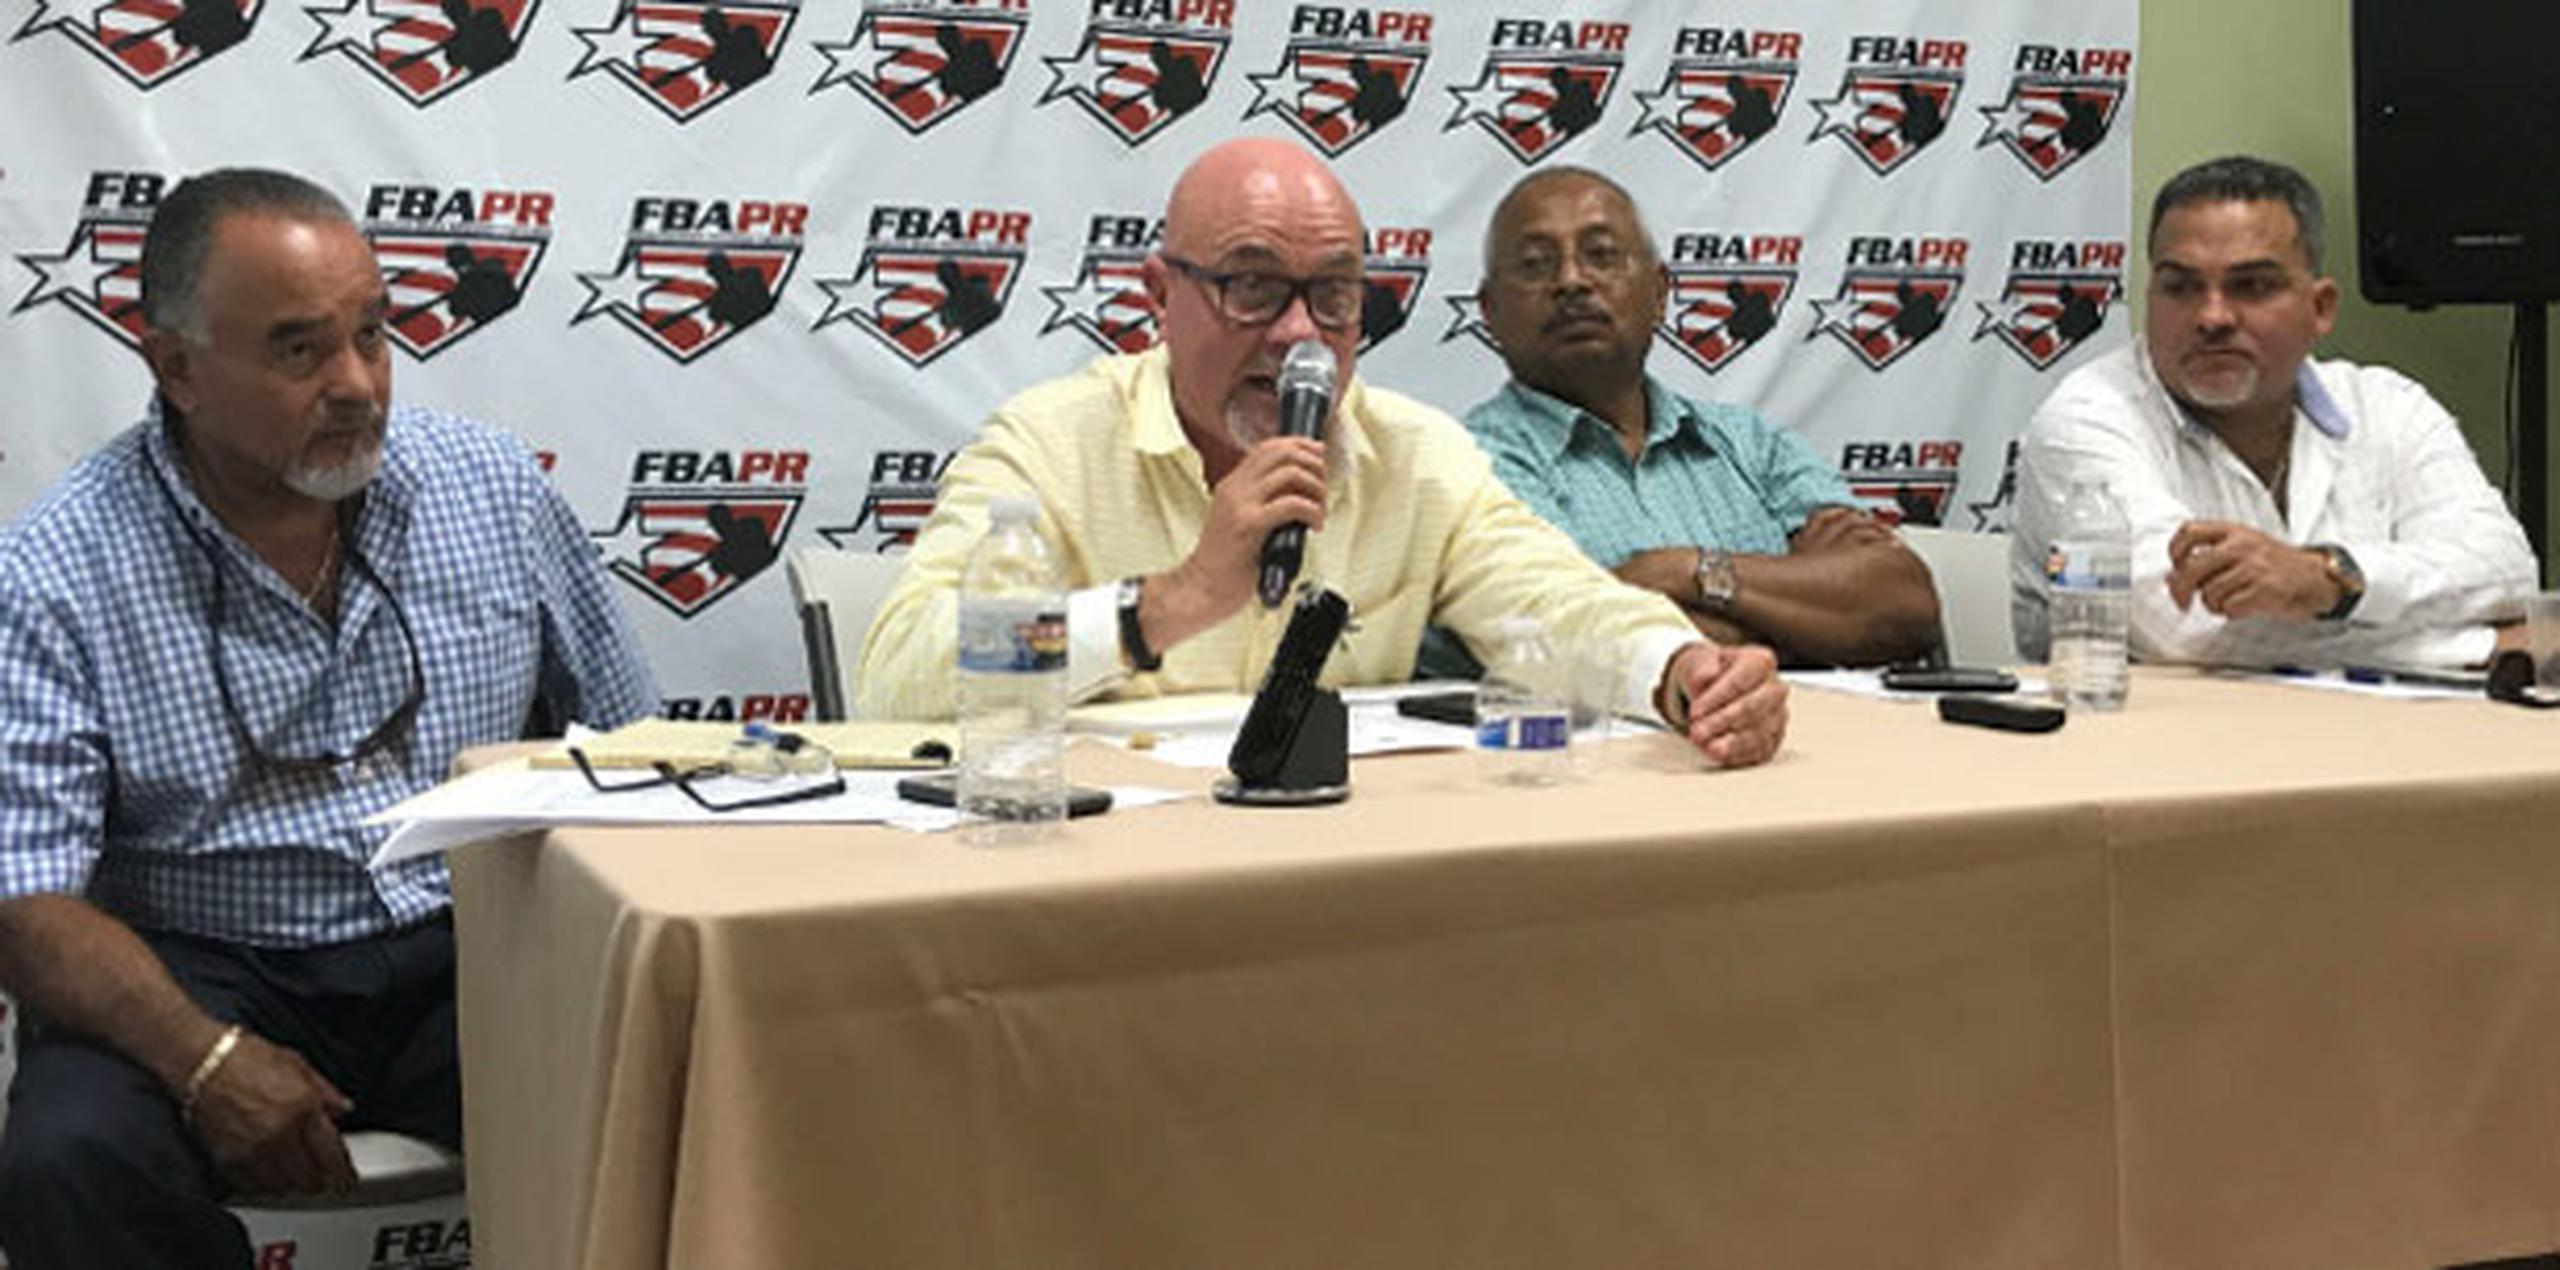 La reunión fue dirigida por el presidente de la Federación de Béisbol de Puerto Rico, José Quiles. (Suministrada)